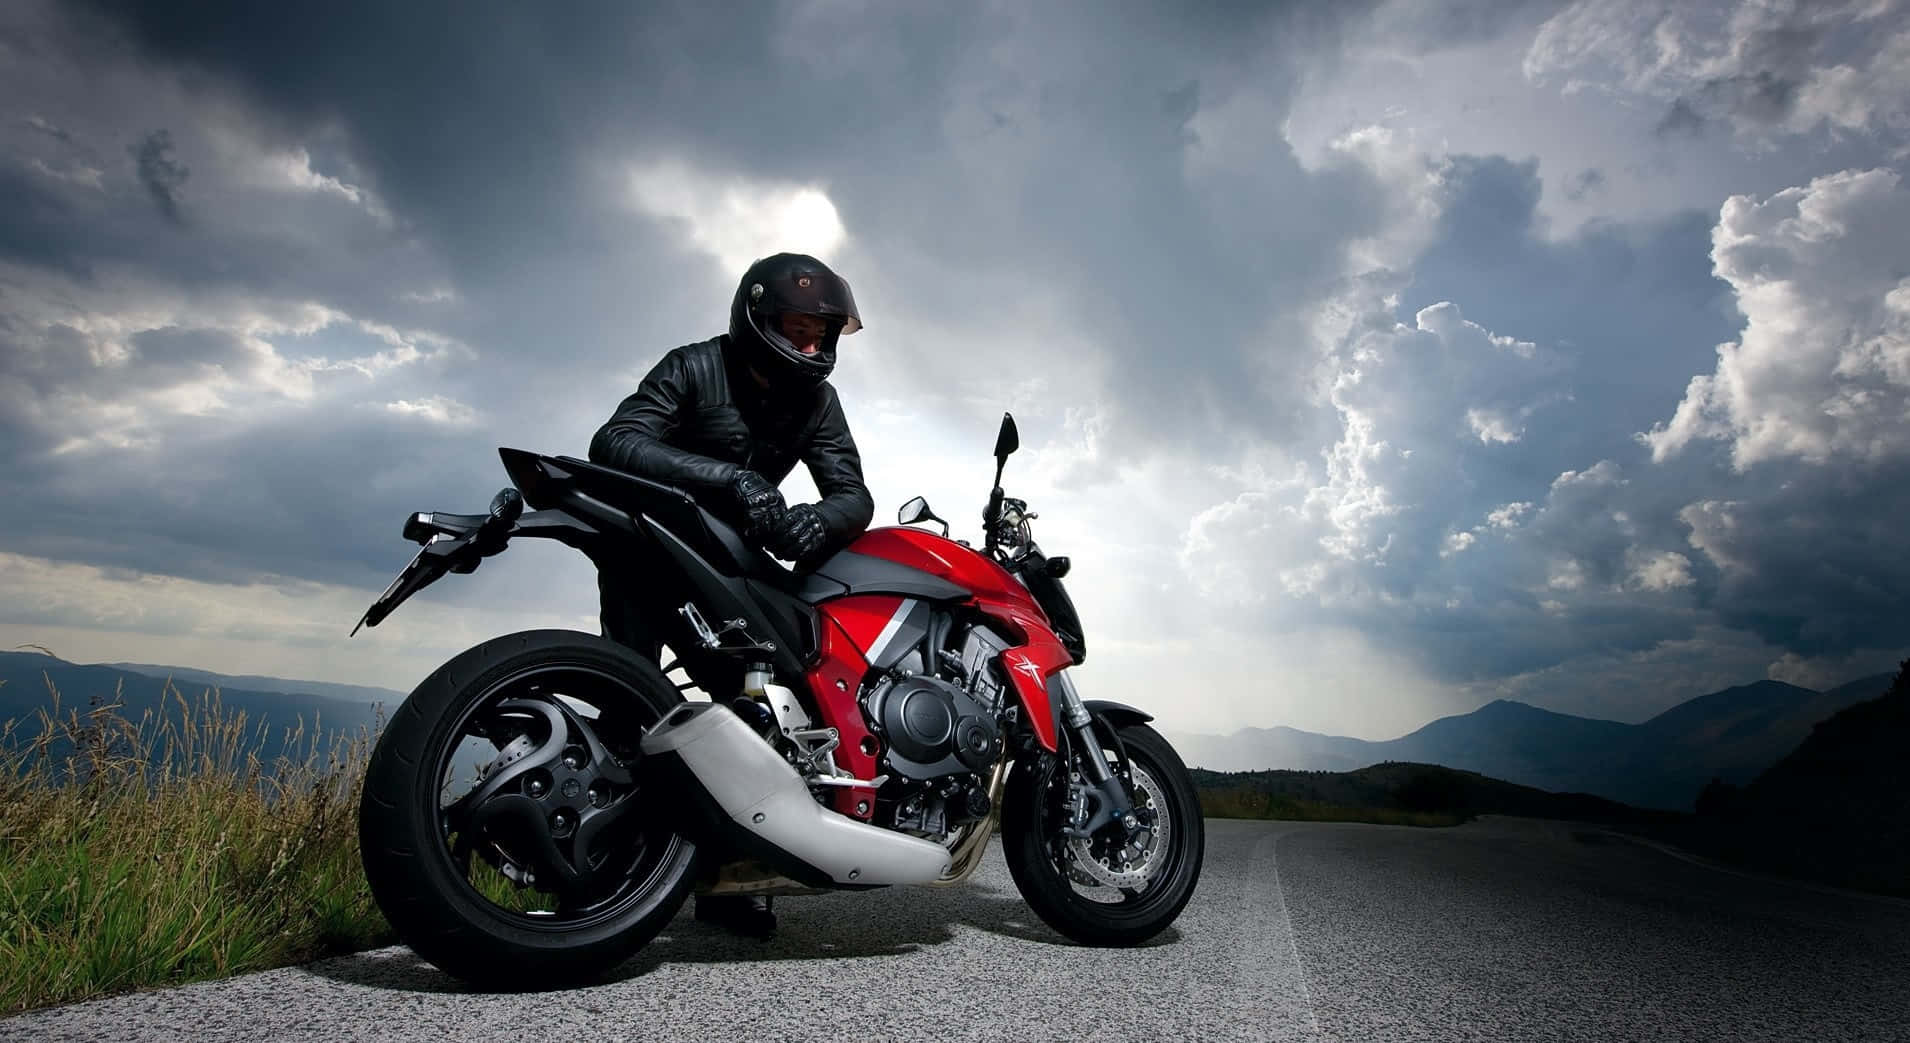 Awe-inspiring Honda Motorcycle In Full Speed Wallpaper